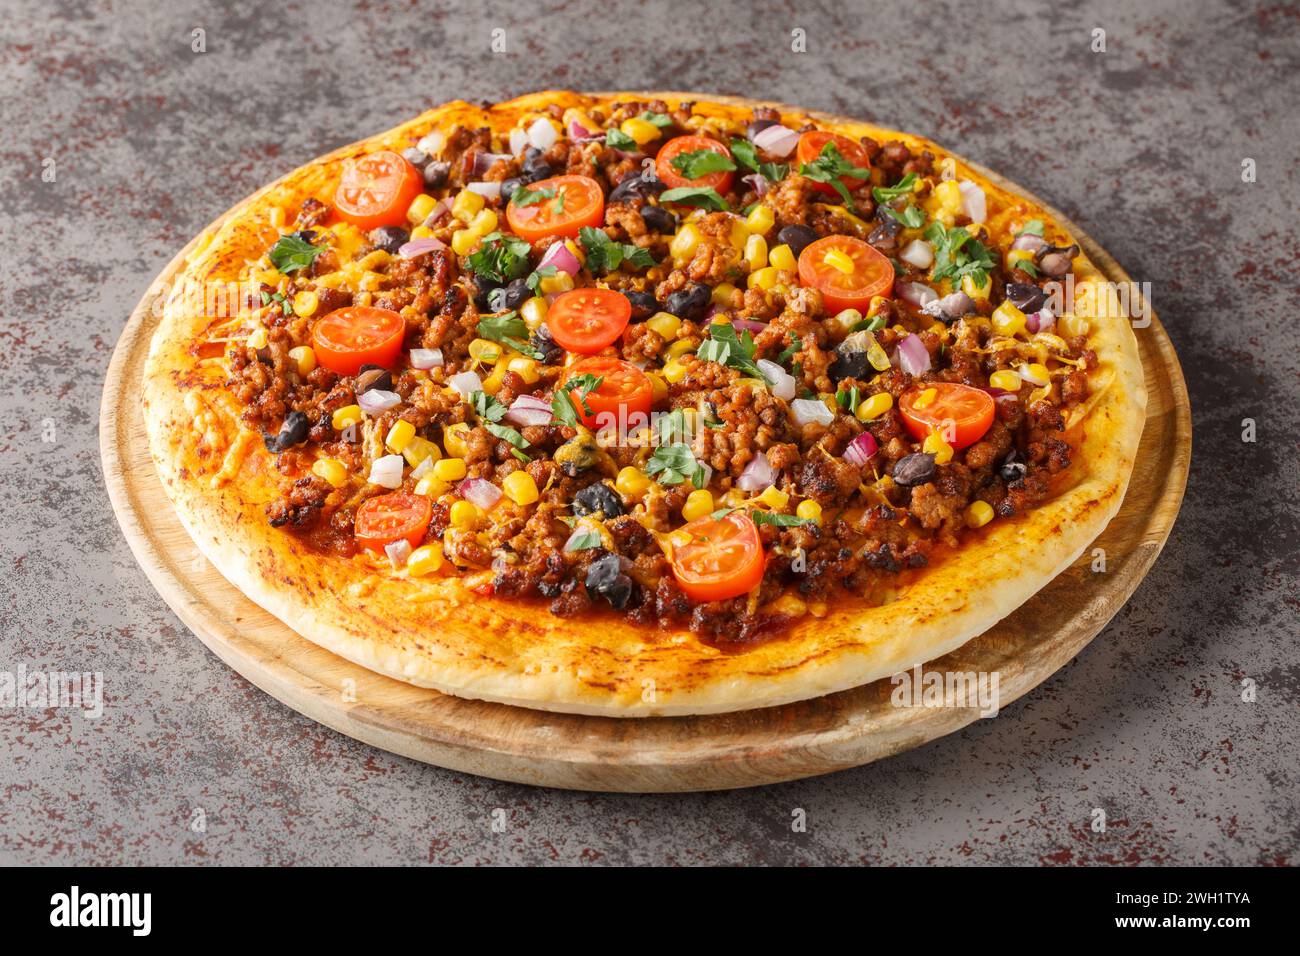 Pizza Tex Mex maison avec bœuf haché, légumes, fromage cheddar et épices mexicaines gros plan sur une planche de bois sur la table. Horizontal Banque D'Images